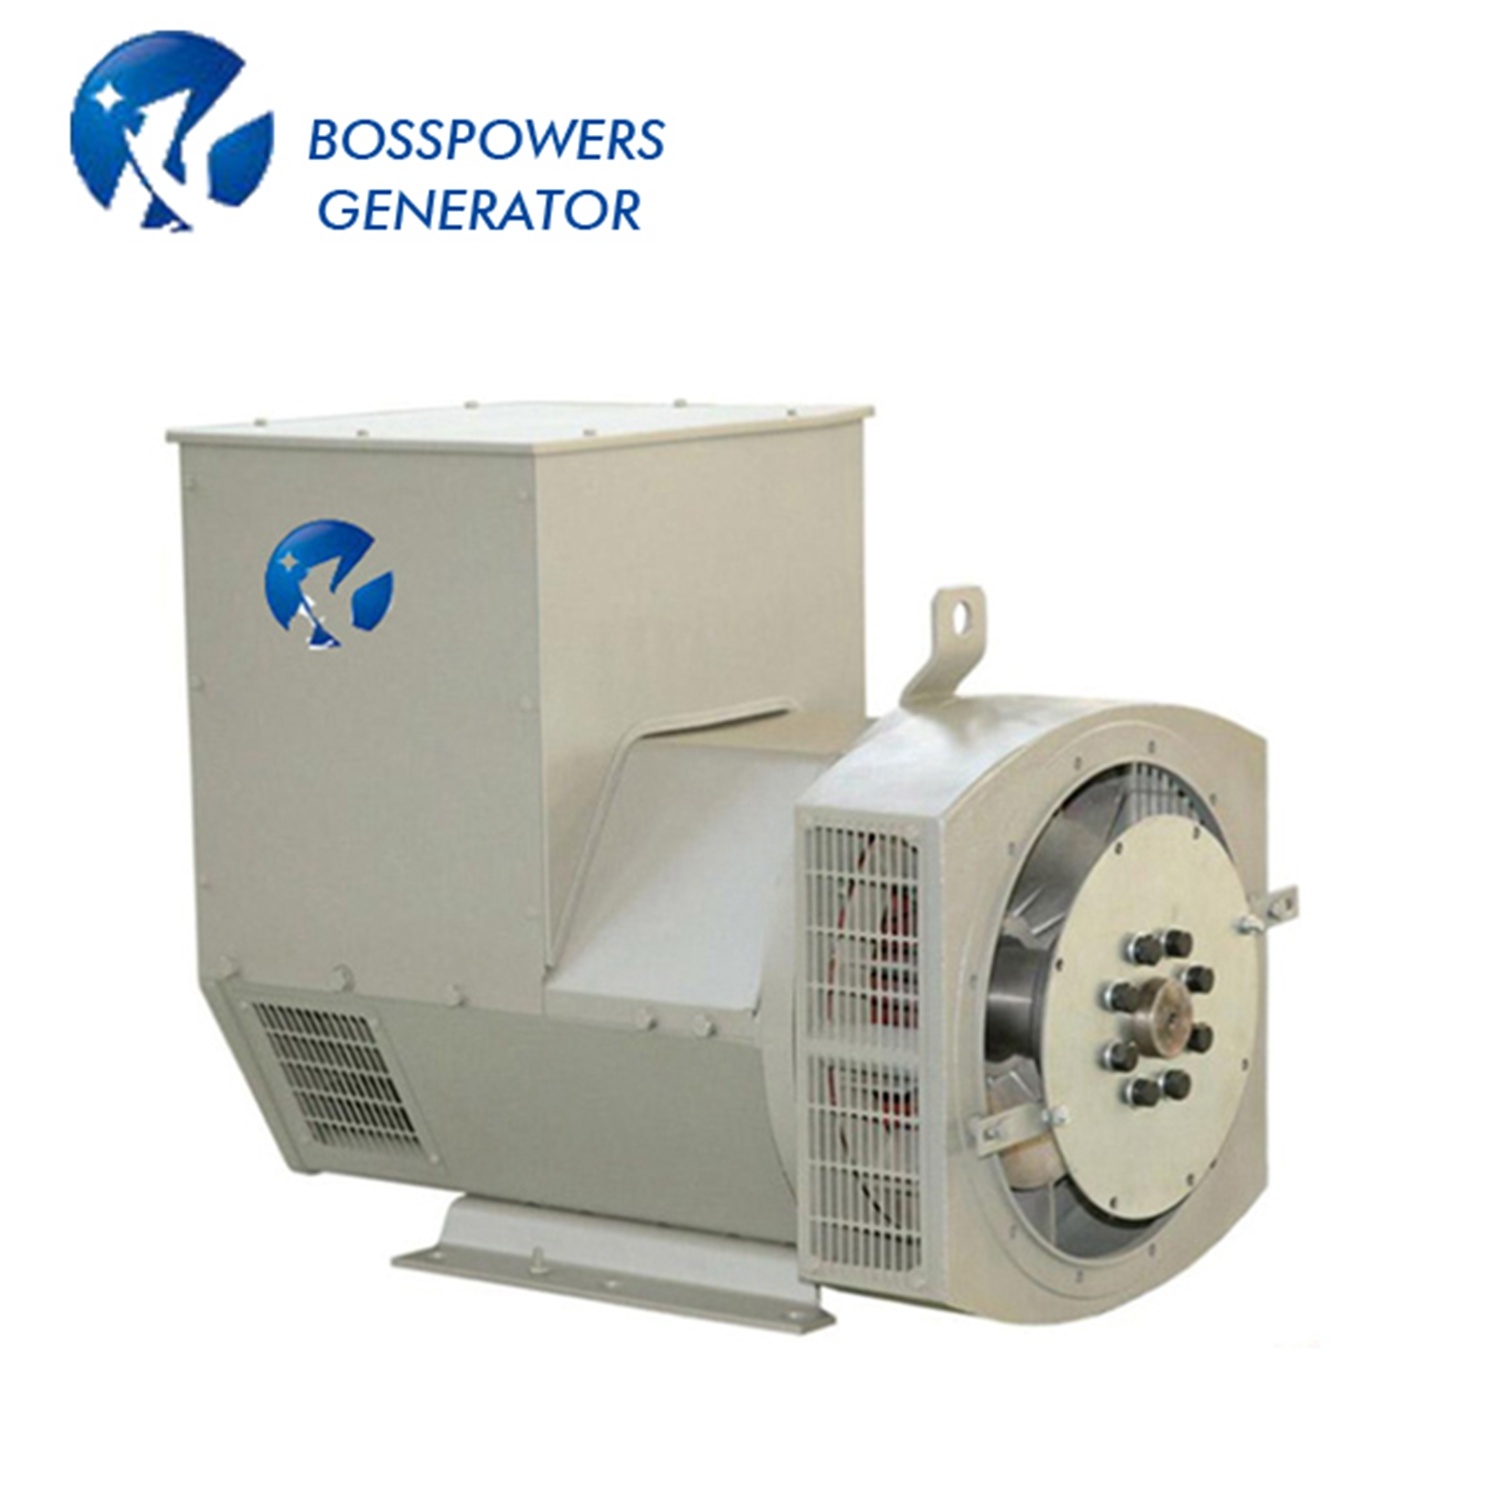 Bosspower Stamford Type Brushless Alternator Generator for Diesel Engine